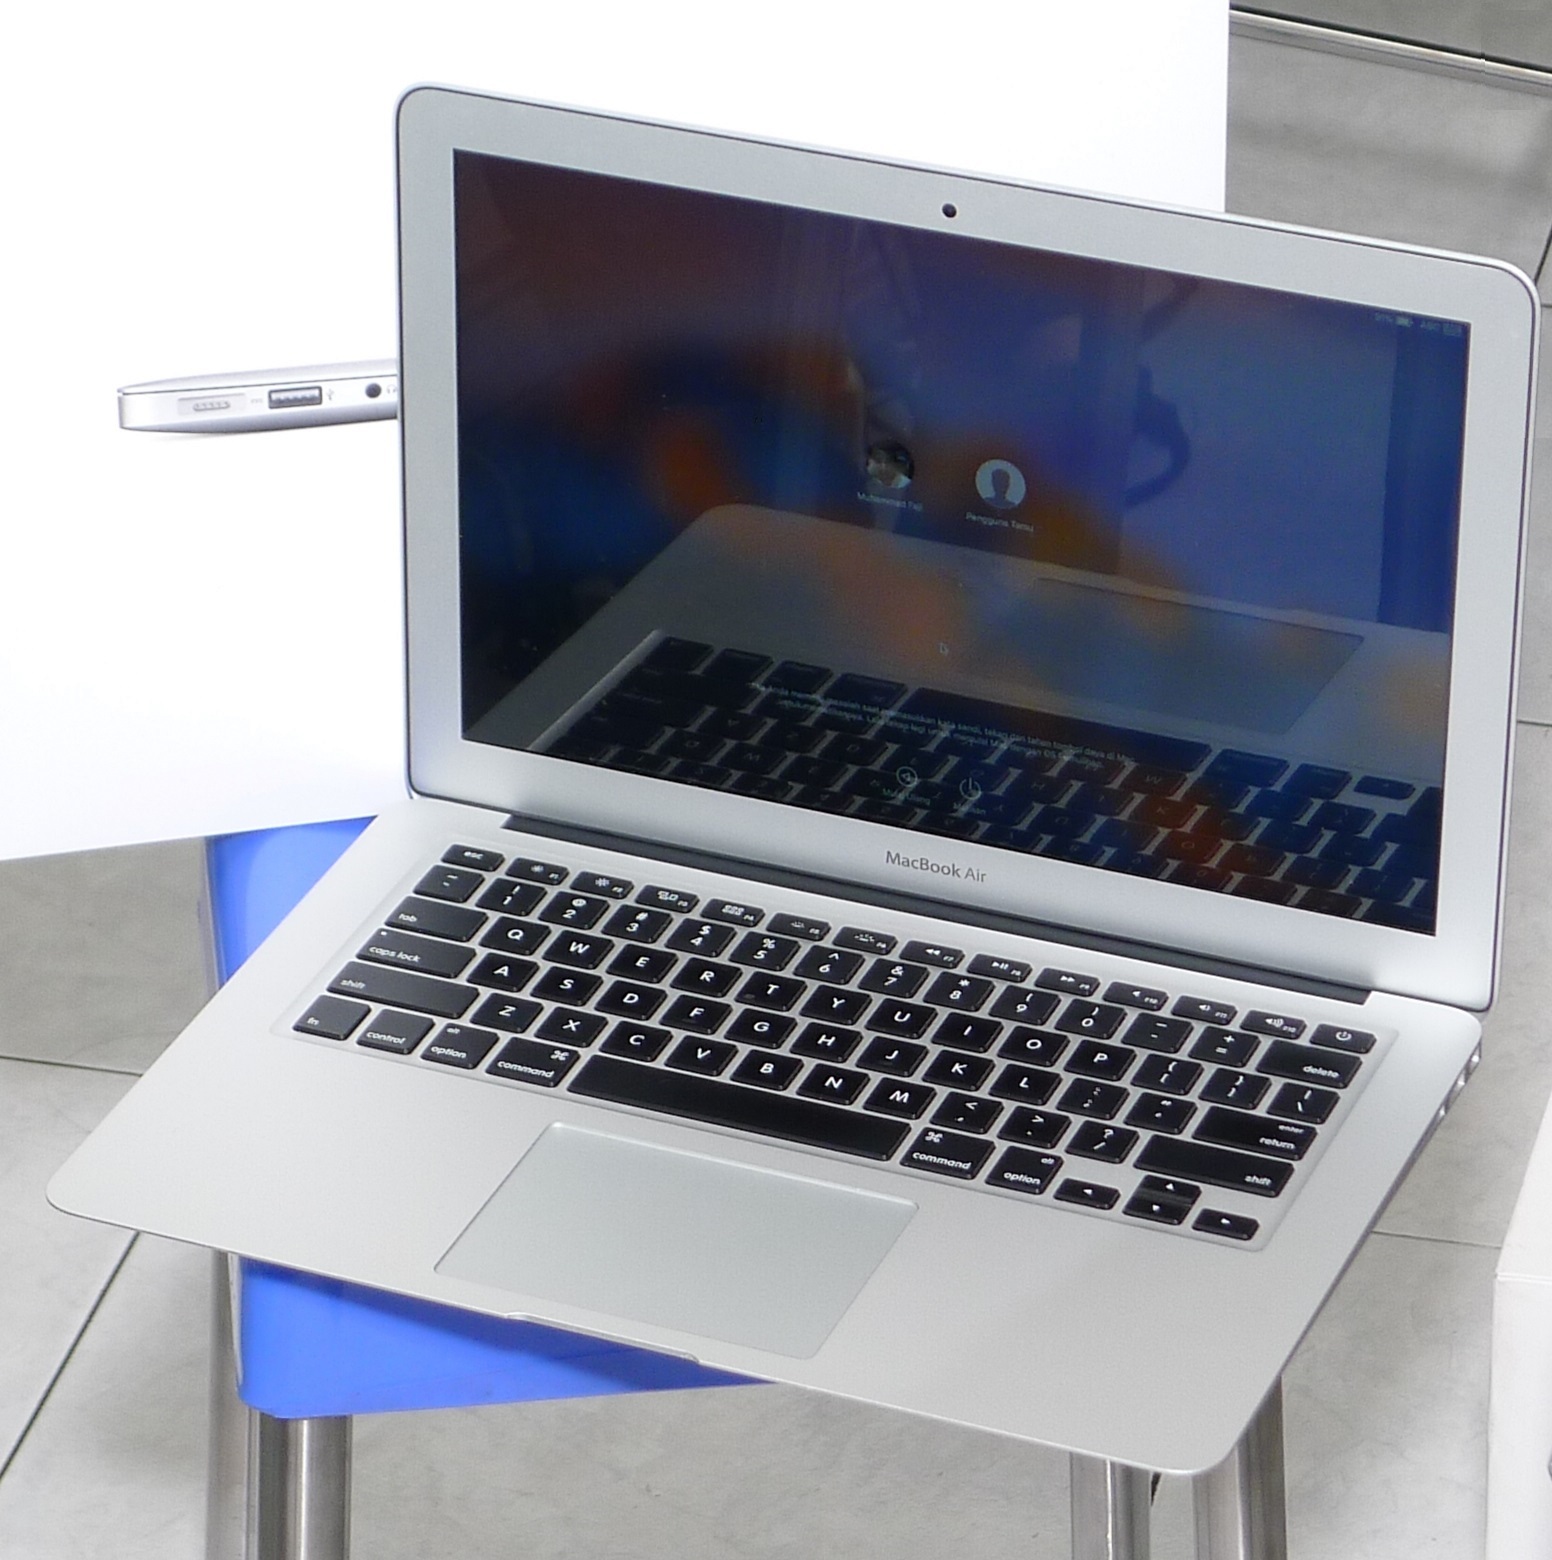 Jual MacBook Air Core i5 13-inch Early 2015 Fullset | Jual Beli Laptop